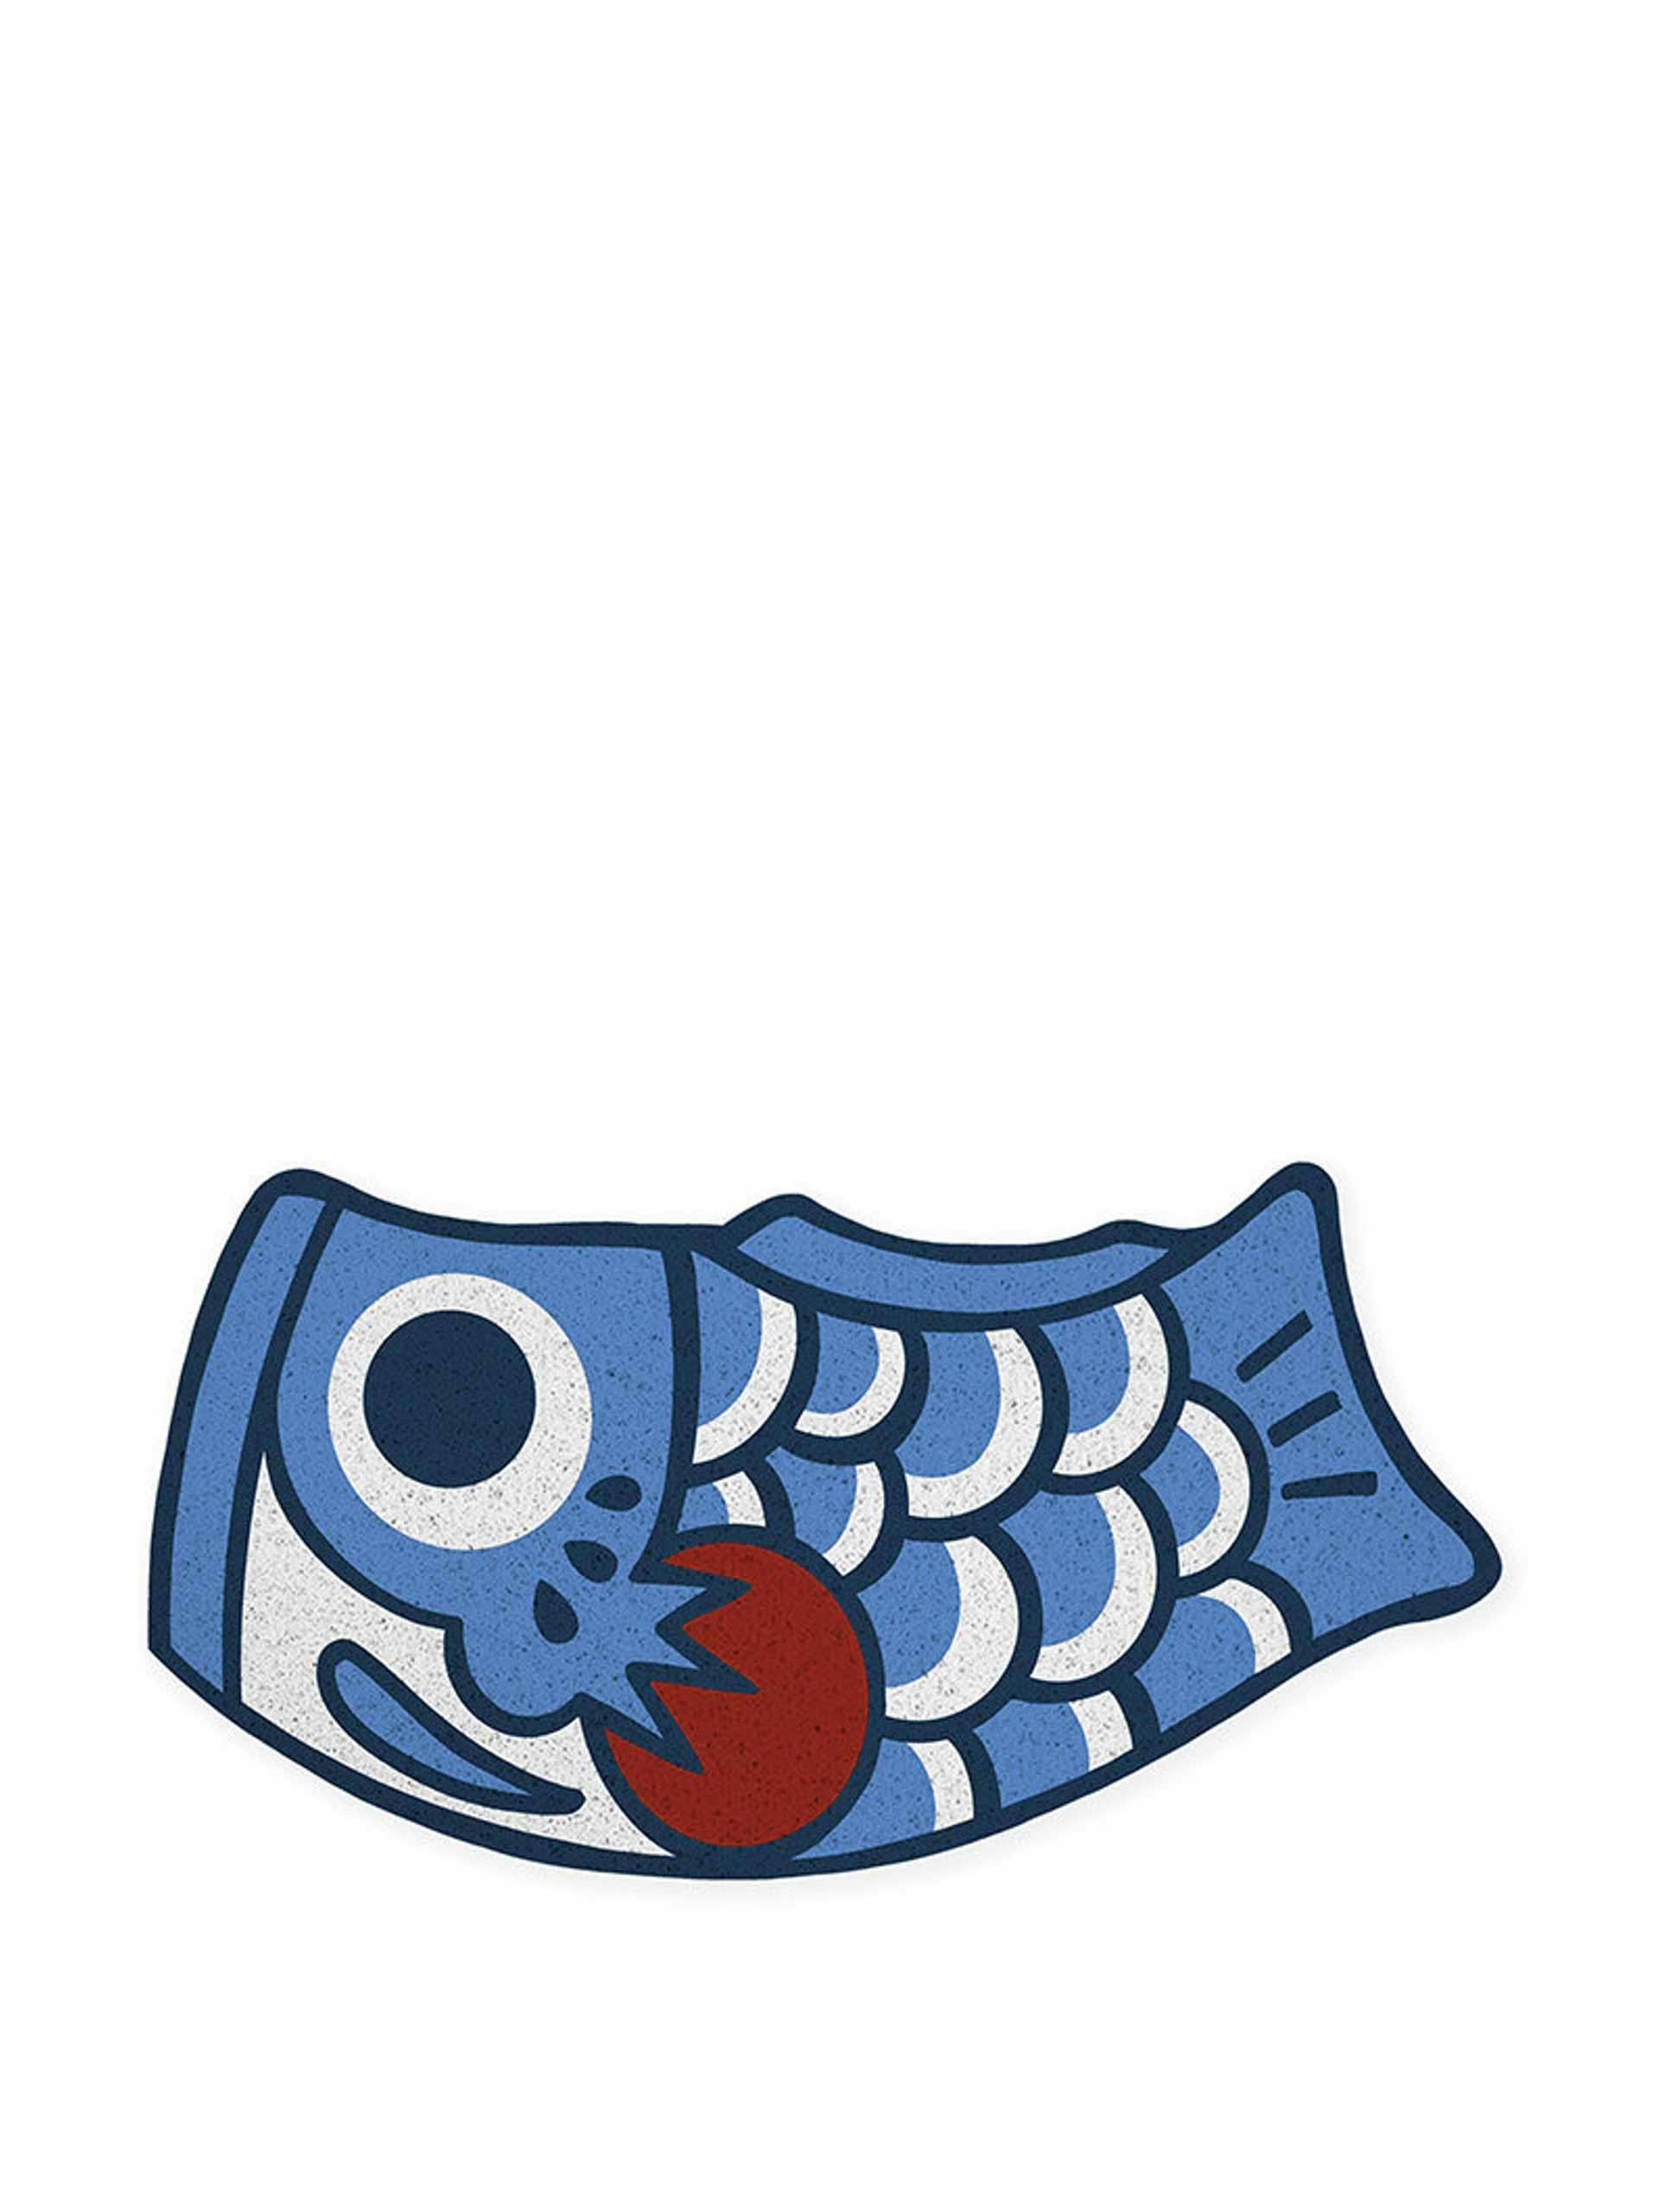 Outdoor koi fish doormat